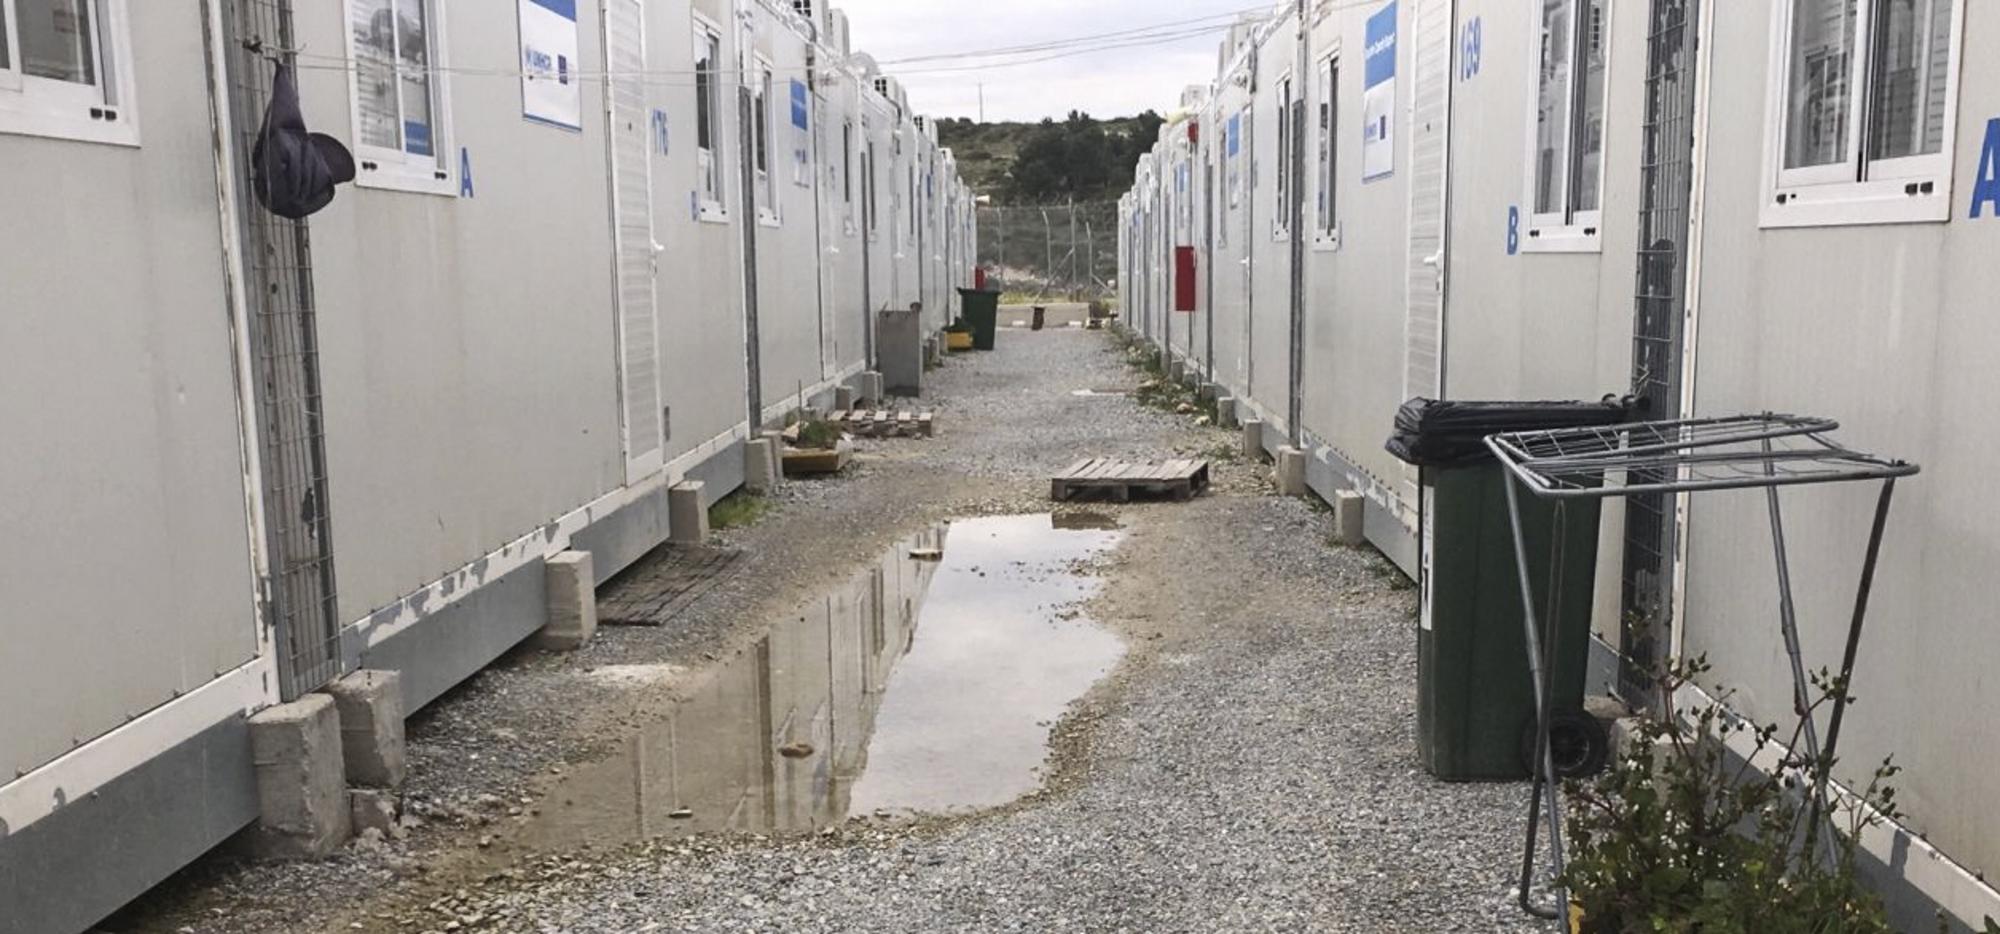 Campo de refugiados cerrado de Samos (Grecia), - 2